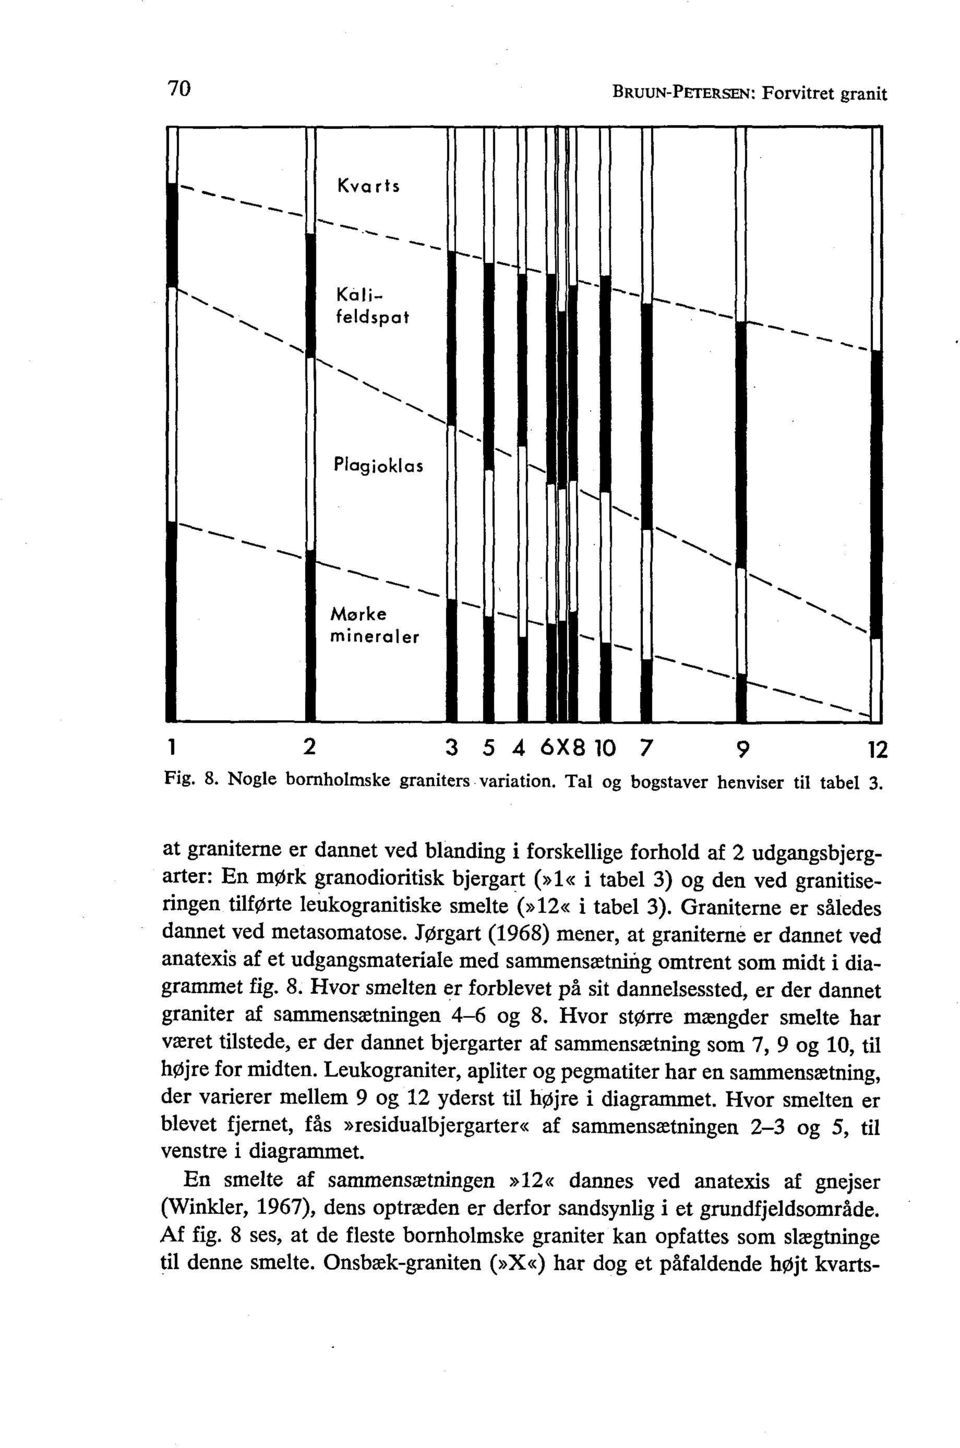 tabel 3). Graniterne er således dannet ved metasomatose. Jørgart (1968) mener, at graniterne er dannet ved anatexis af et udgangsmateriale med sammensætning omtrent som midt i diagrammet fig. 8.